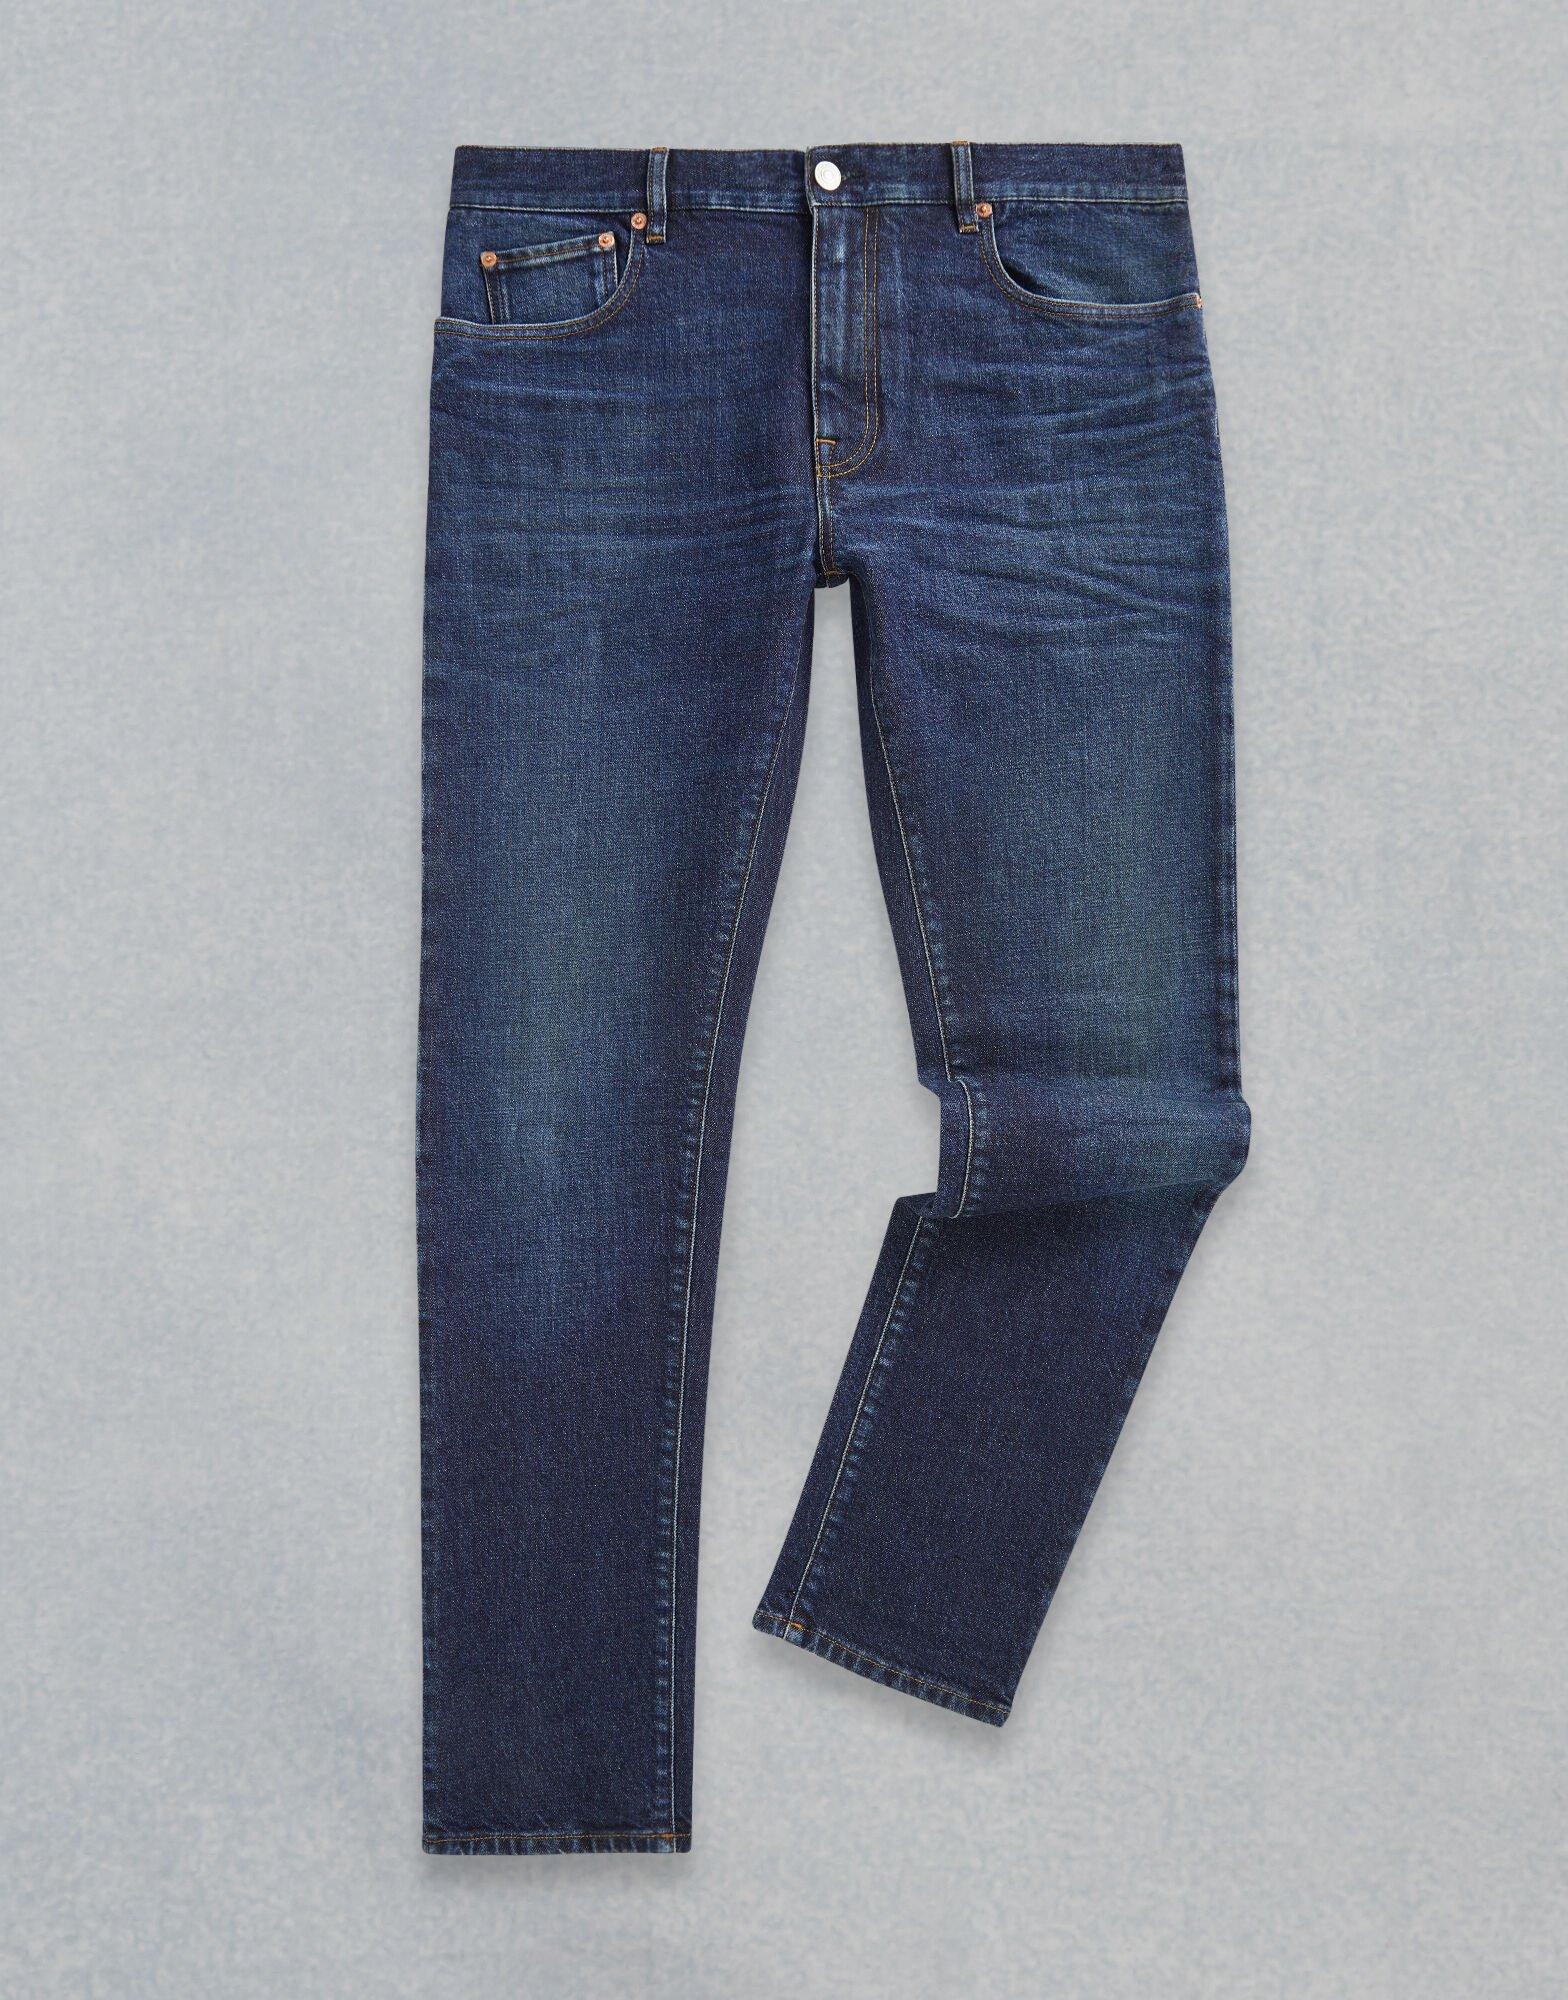 Belstaff Denim Longton Slim Jeans in Washed Indigo (Blue) for Men - Lyst